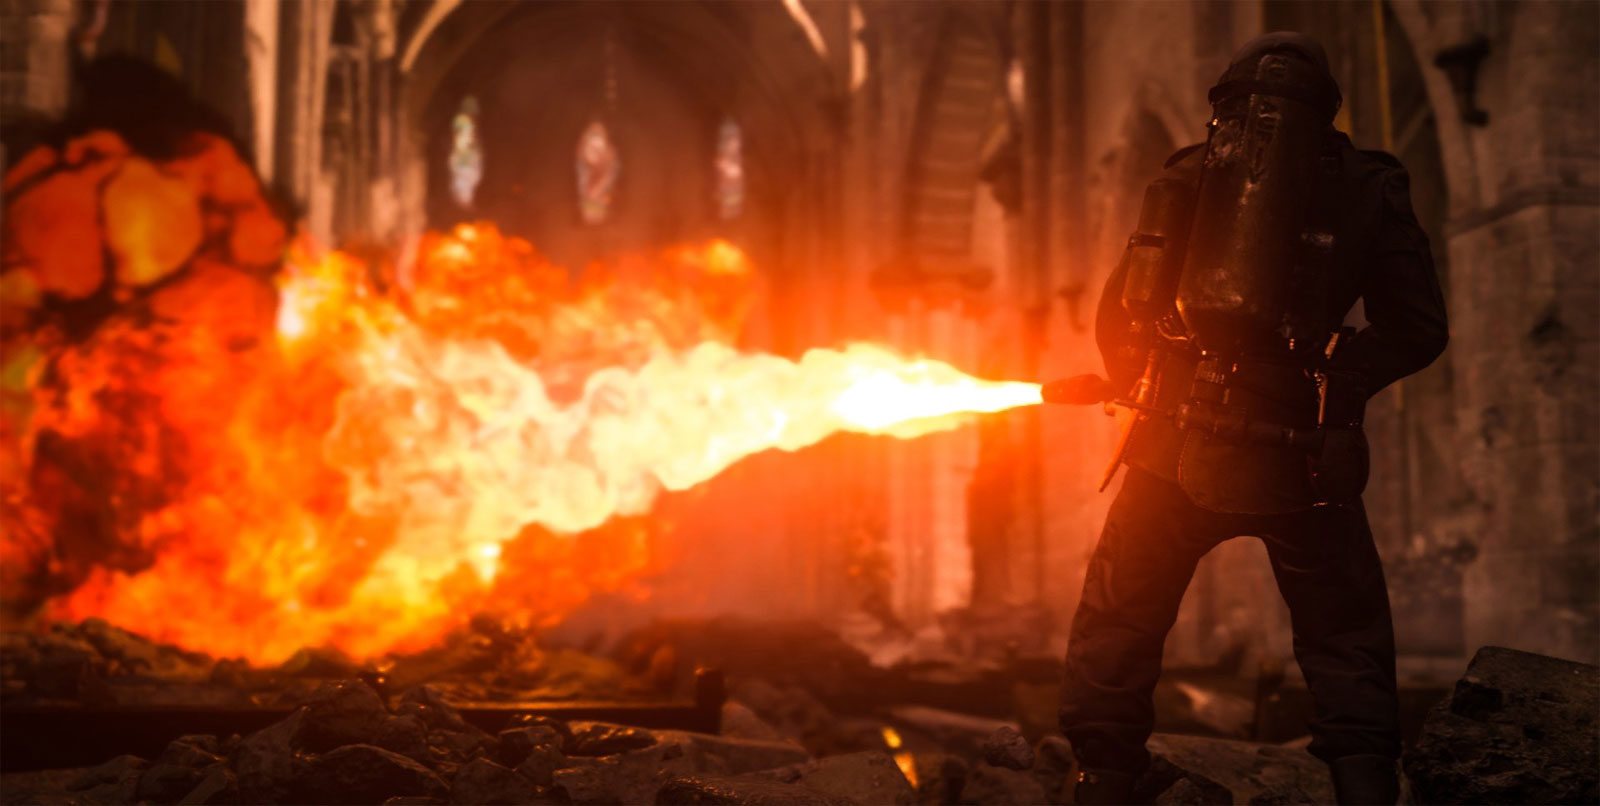 Darmowe granie w multiplayer Call of Duty: WWII przez cały weekend